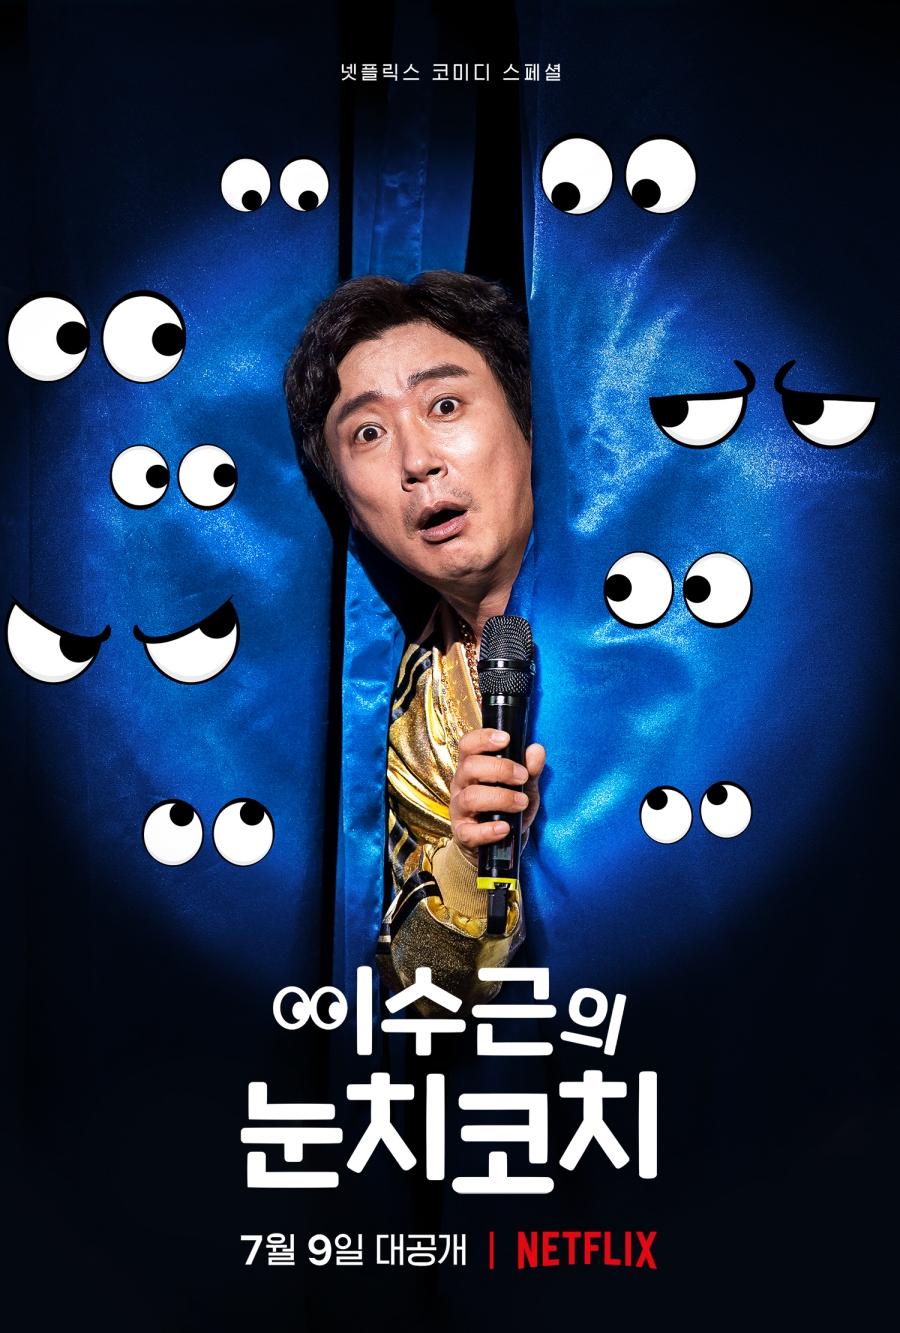 '이수근의 눈치코치', 오는 7월 9일 넷플릭스서 공개…'기대 UP!'